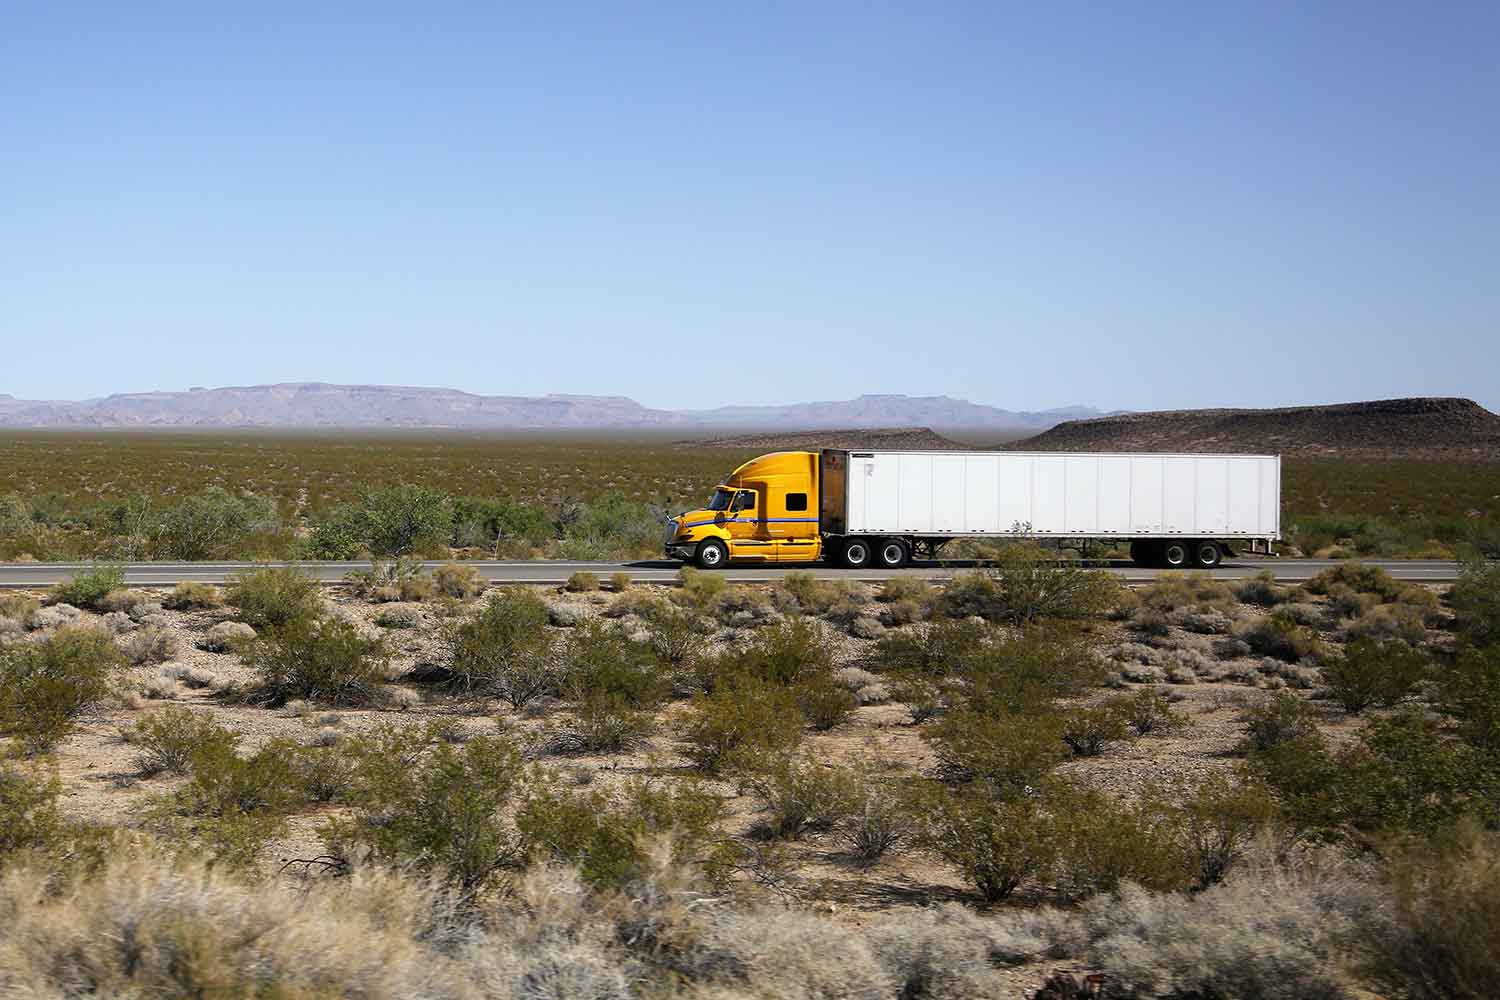 砂漠地帯のフリーウェイを走行するトレーラーのイメージ写真